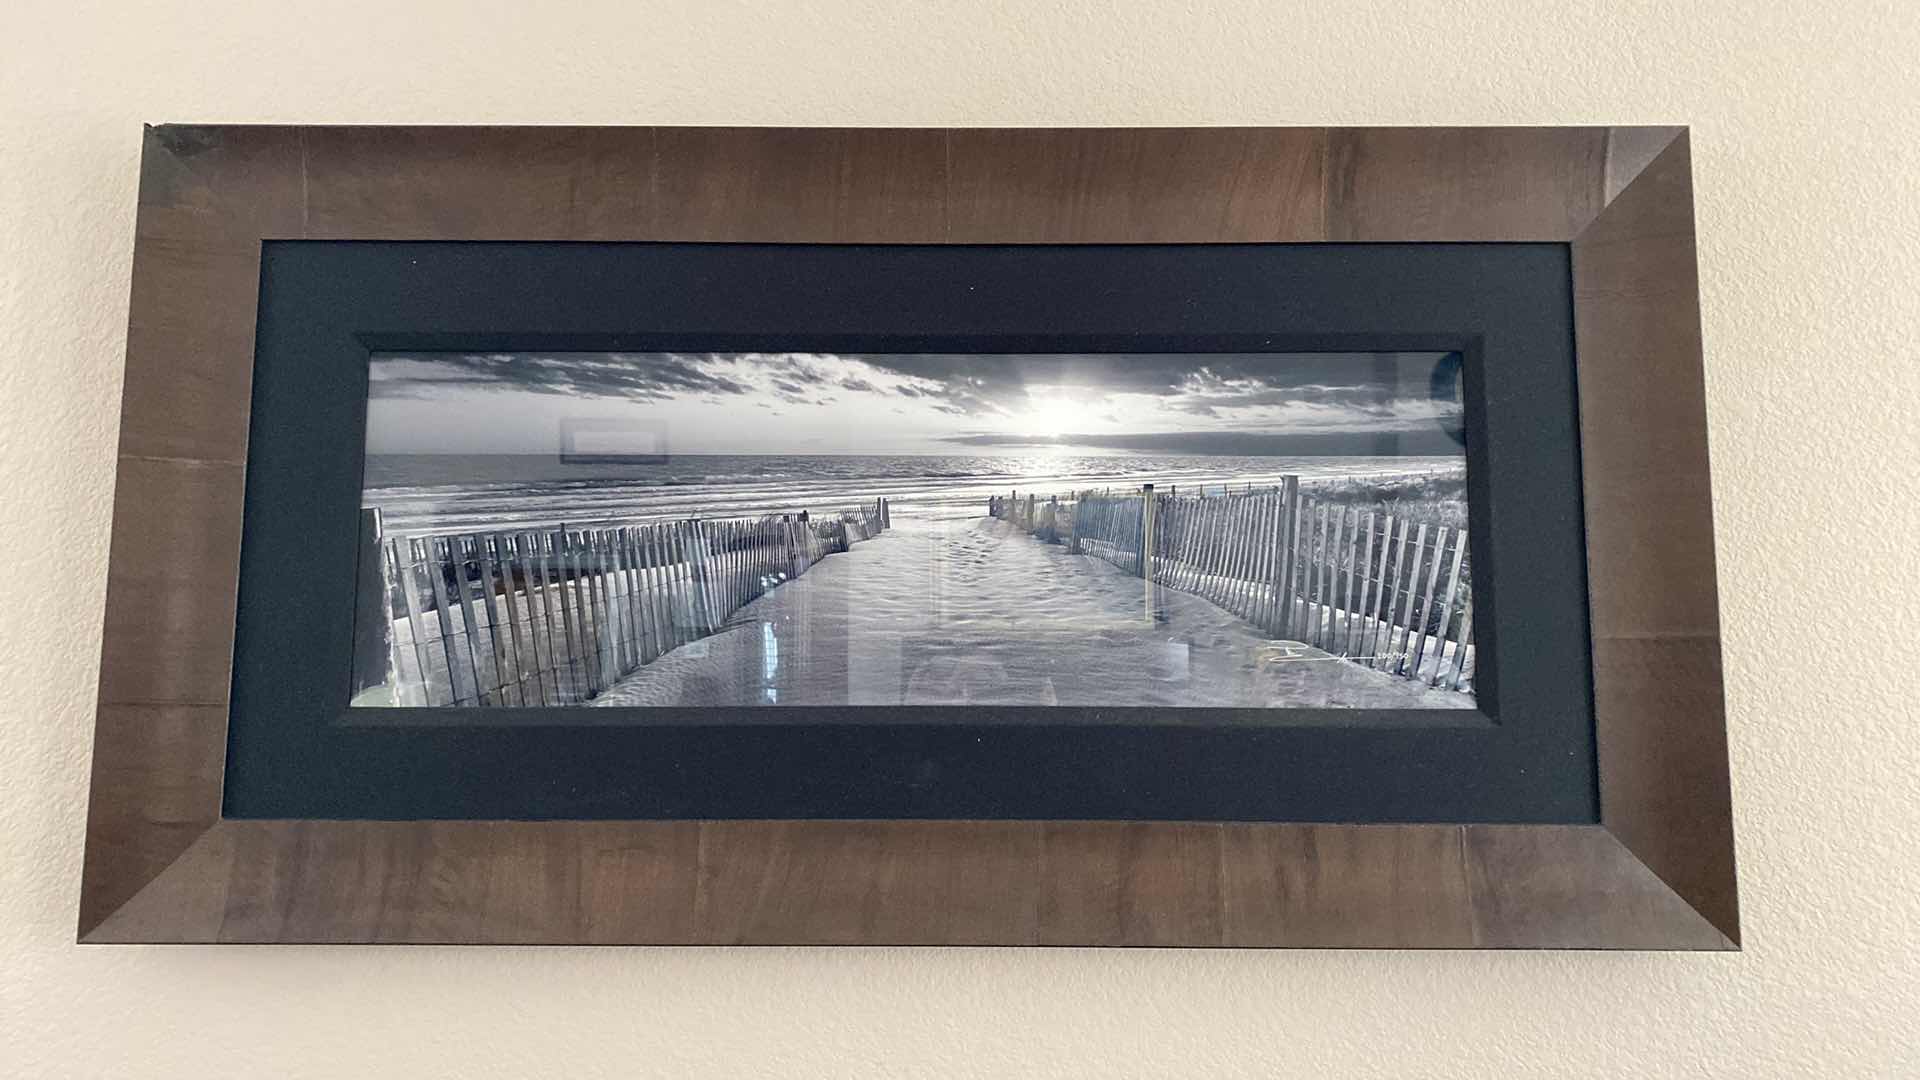 Photo 1 of GALLERY FRAMED SIGNED PETER LIK BLACK/WHITE BEACH SCENE 200/950 ARTWORK 56” x 29” including frame, coa not available